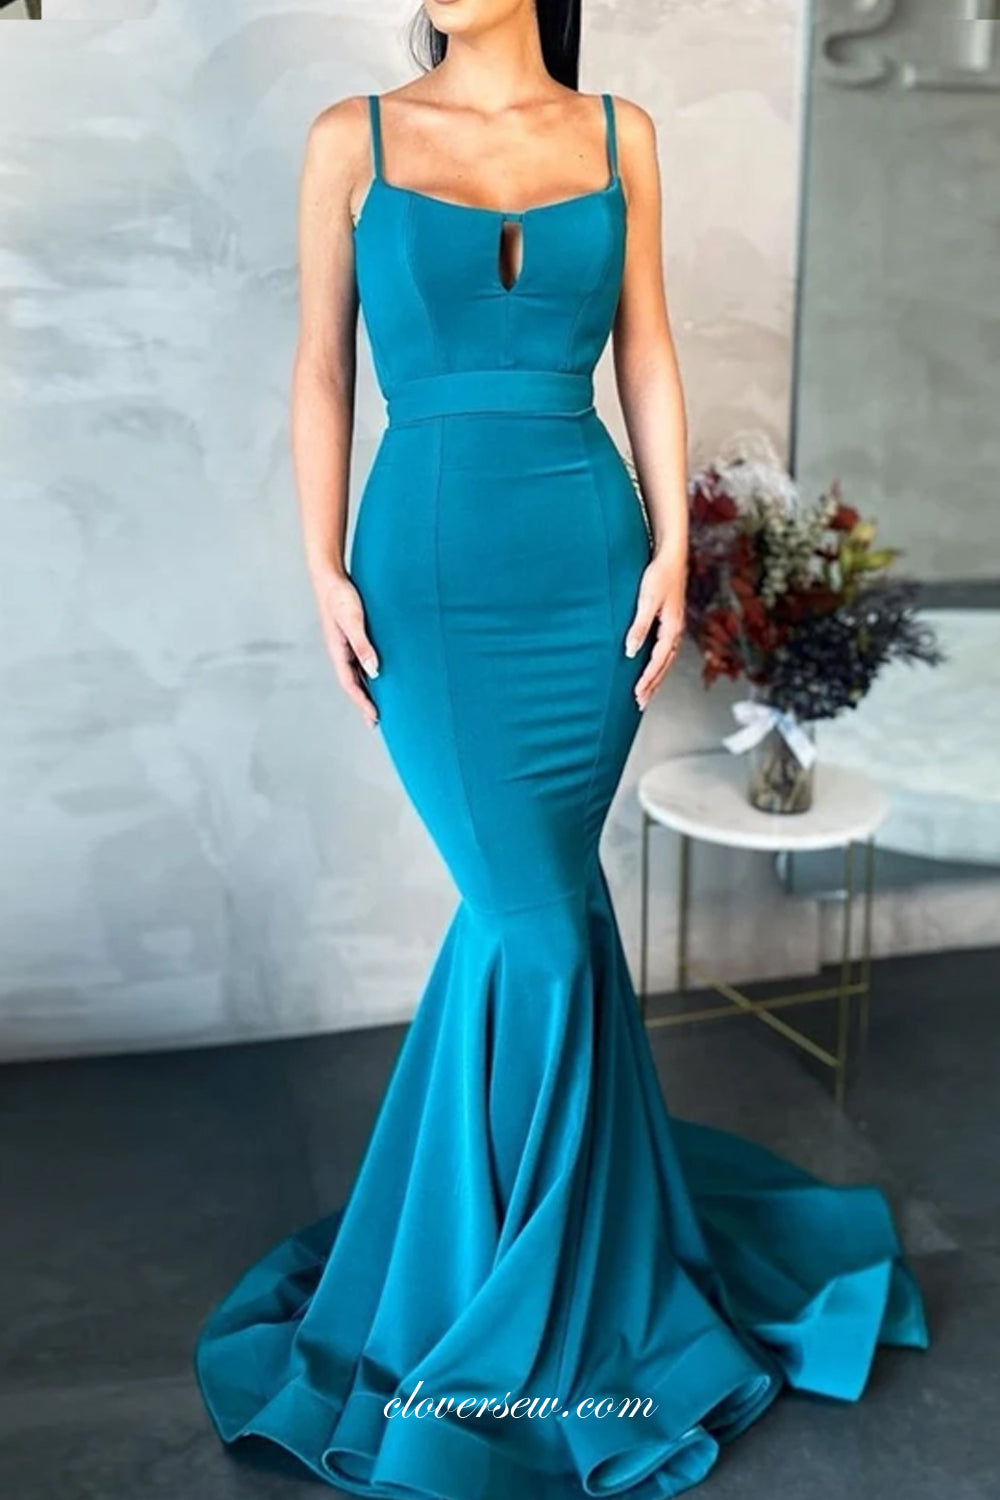 Blue Spaghetti Strap Fashion Mermaid Elegant Prom Dresses, CP0707